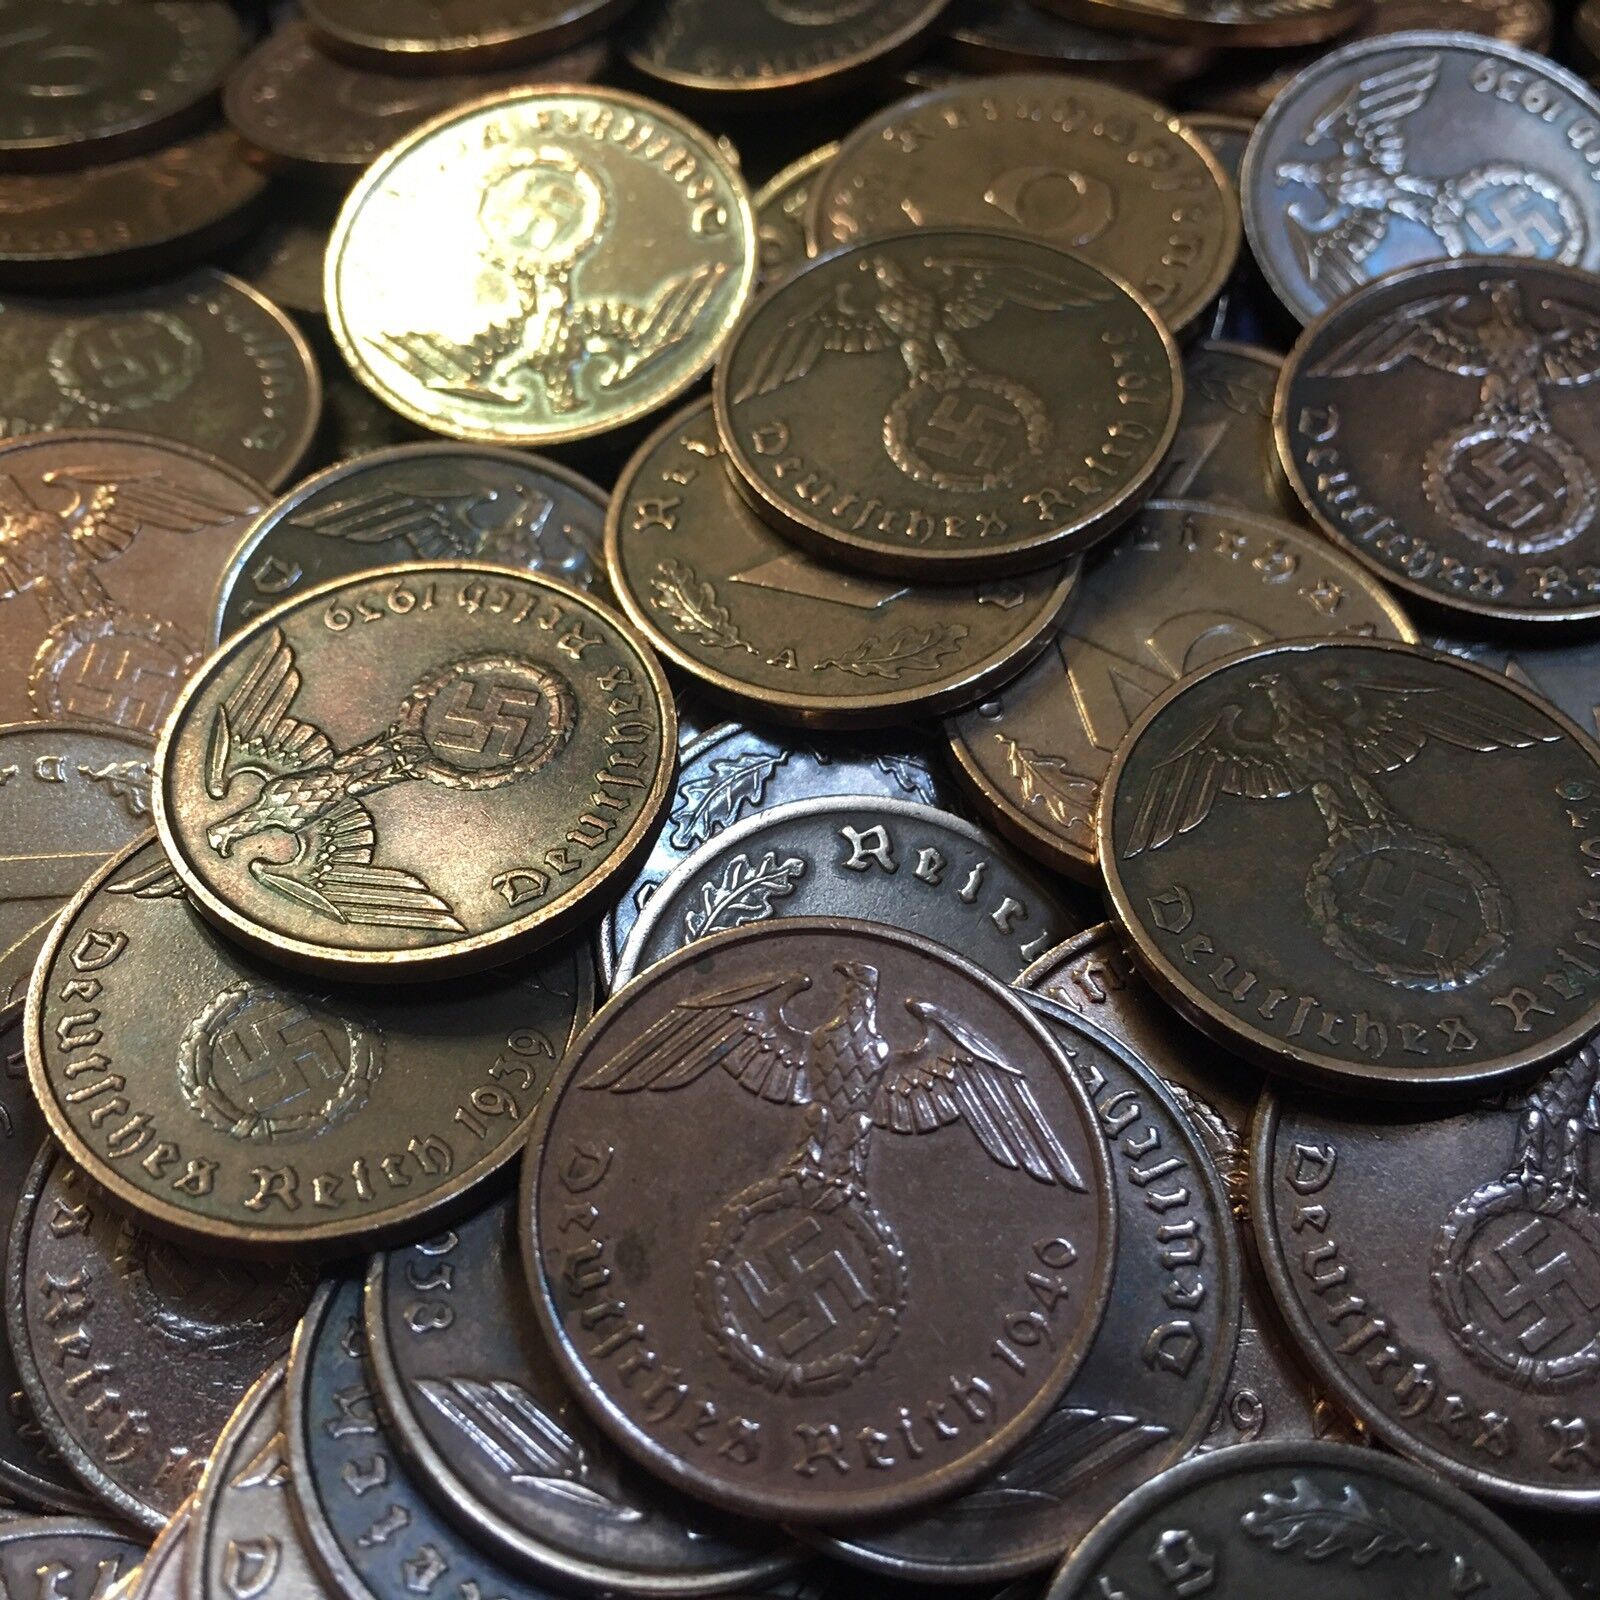 Rare WW2 German 2 RP Reichspfennig 3rd Reich Bronze Nazi Coin Buy 3 Get 1 Free Без бренда - фотография #7